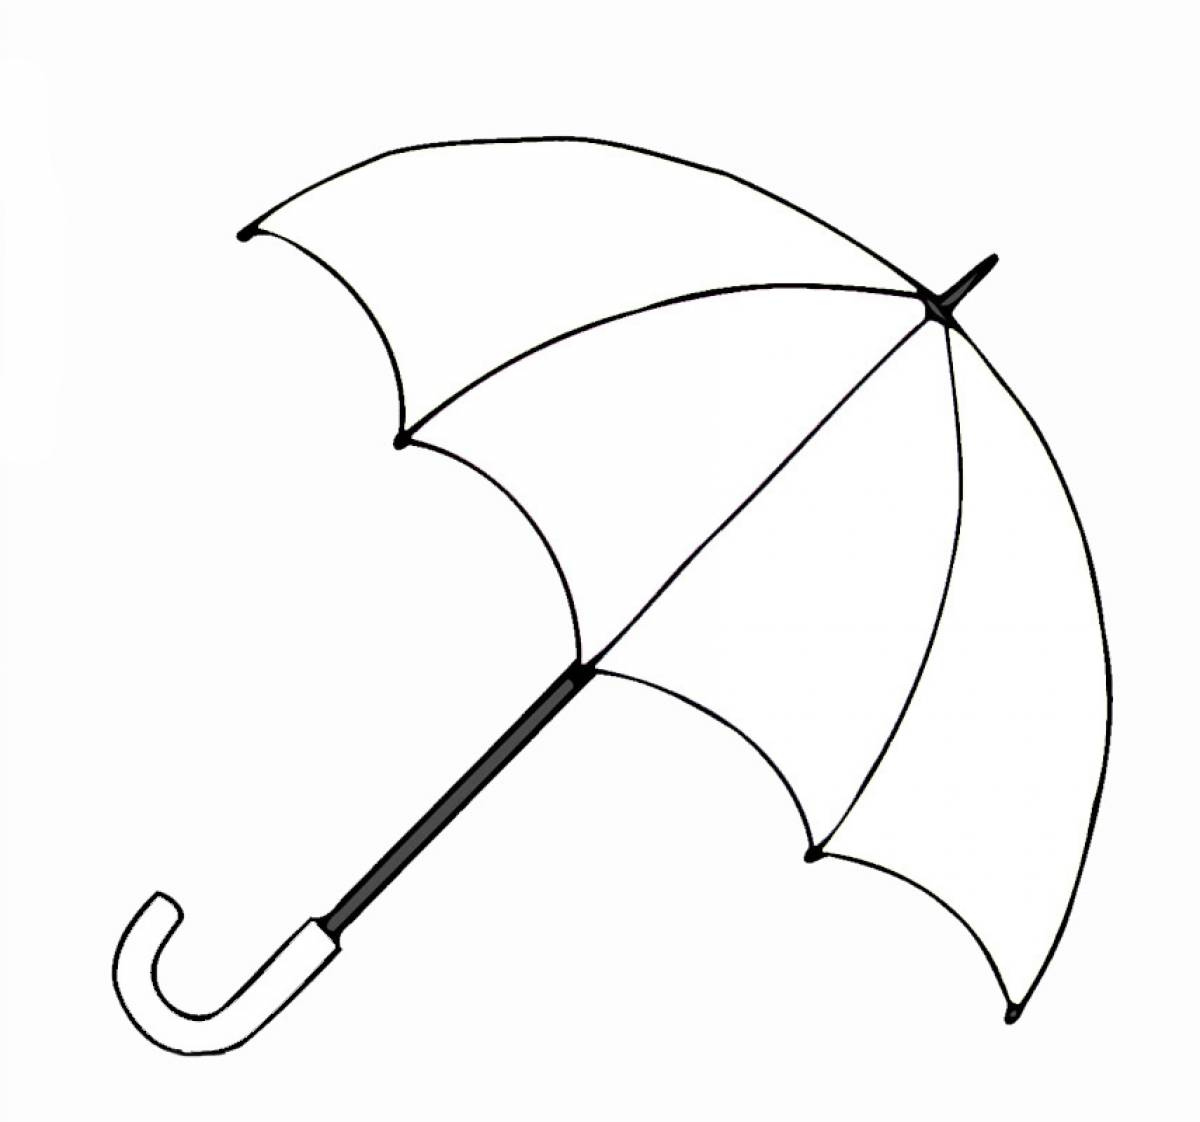 Huge umbrella